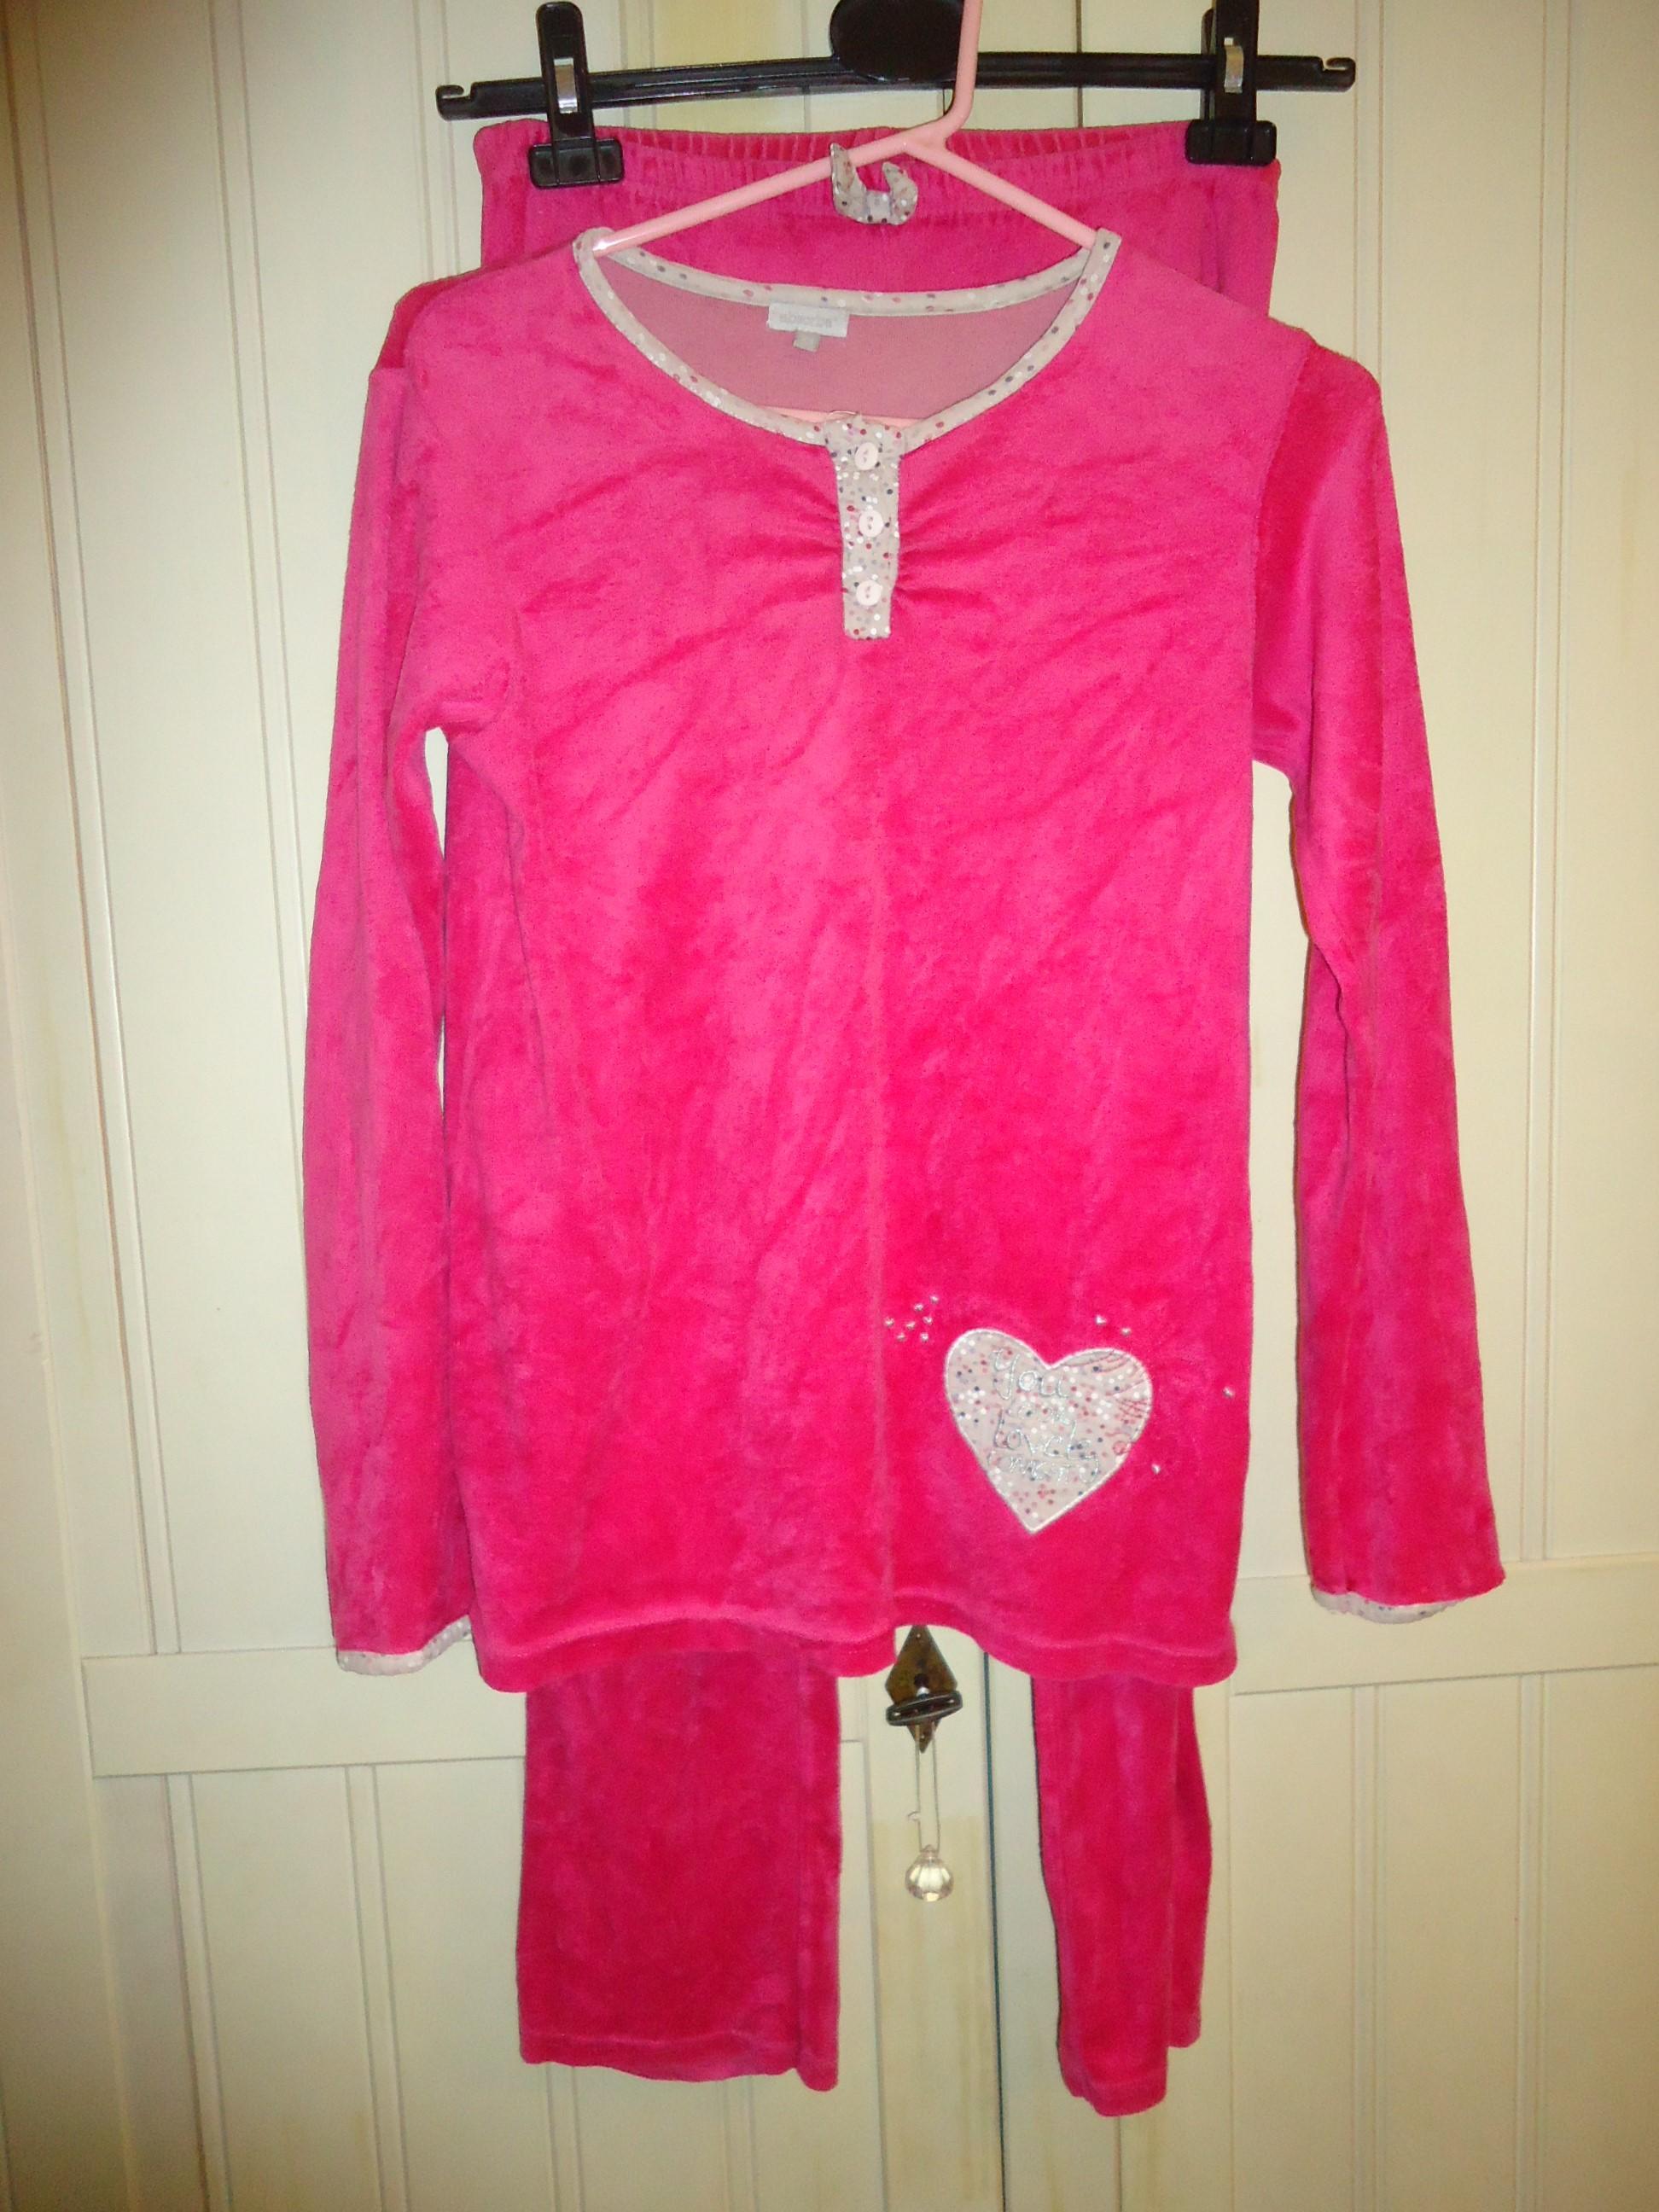 troc de troc pyjama rose xs ou 152 cm, marque absorba image 0